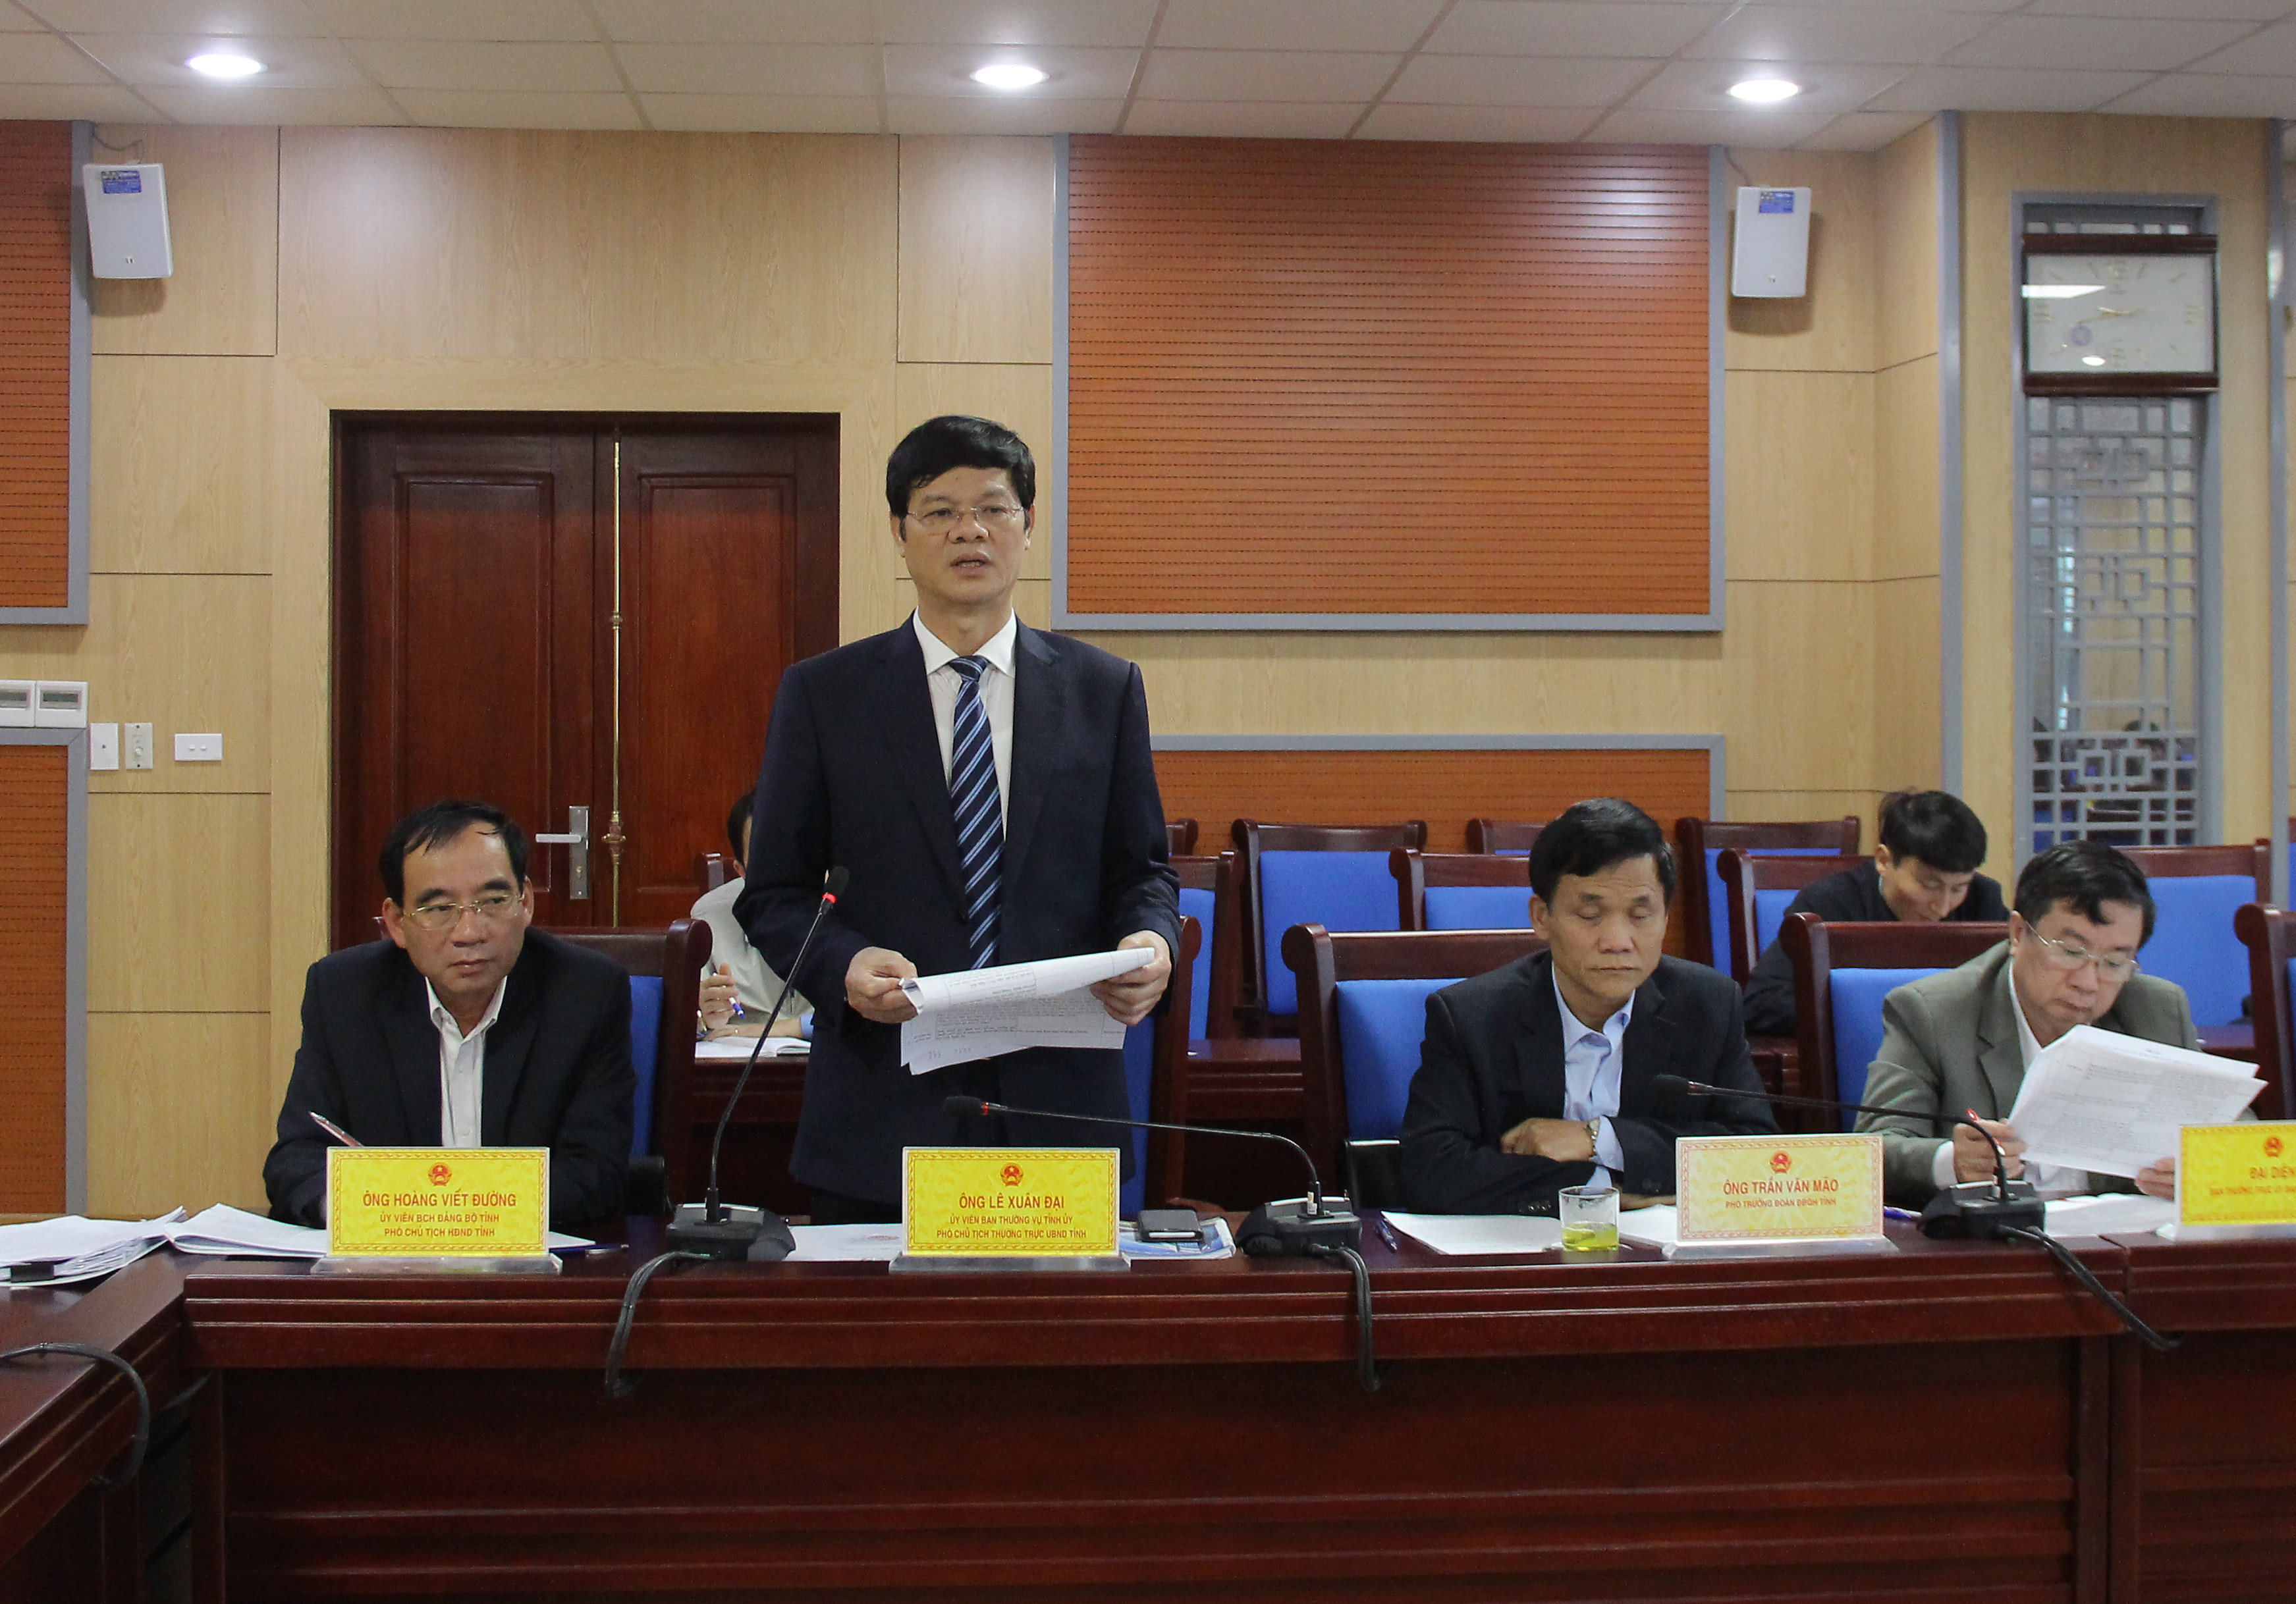 Phó Chủ tịch Thường trực UBND tỉnh Lê Xuân Đại đề nghị Ủy ban MTTQ tỉnh đổi mới nội dung, phương thức hoạt động, góp phần thúc đẩy sự phát triển chung của tỉnh.